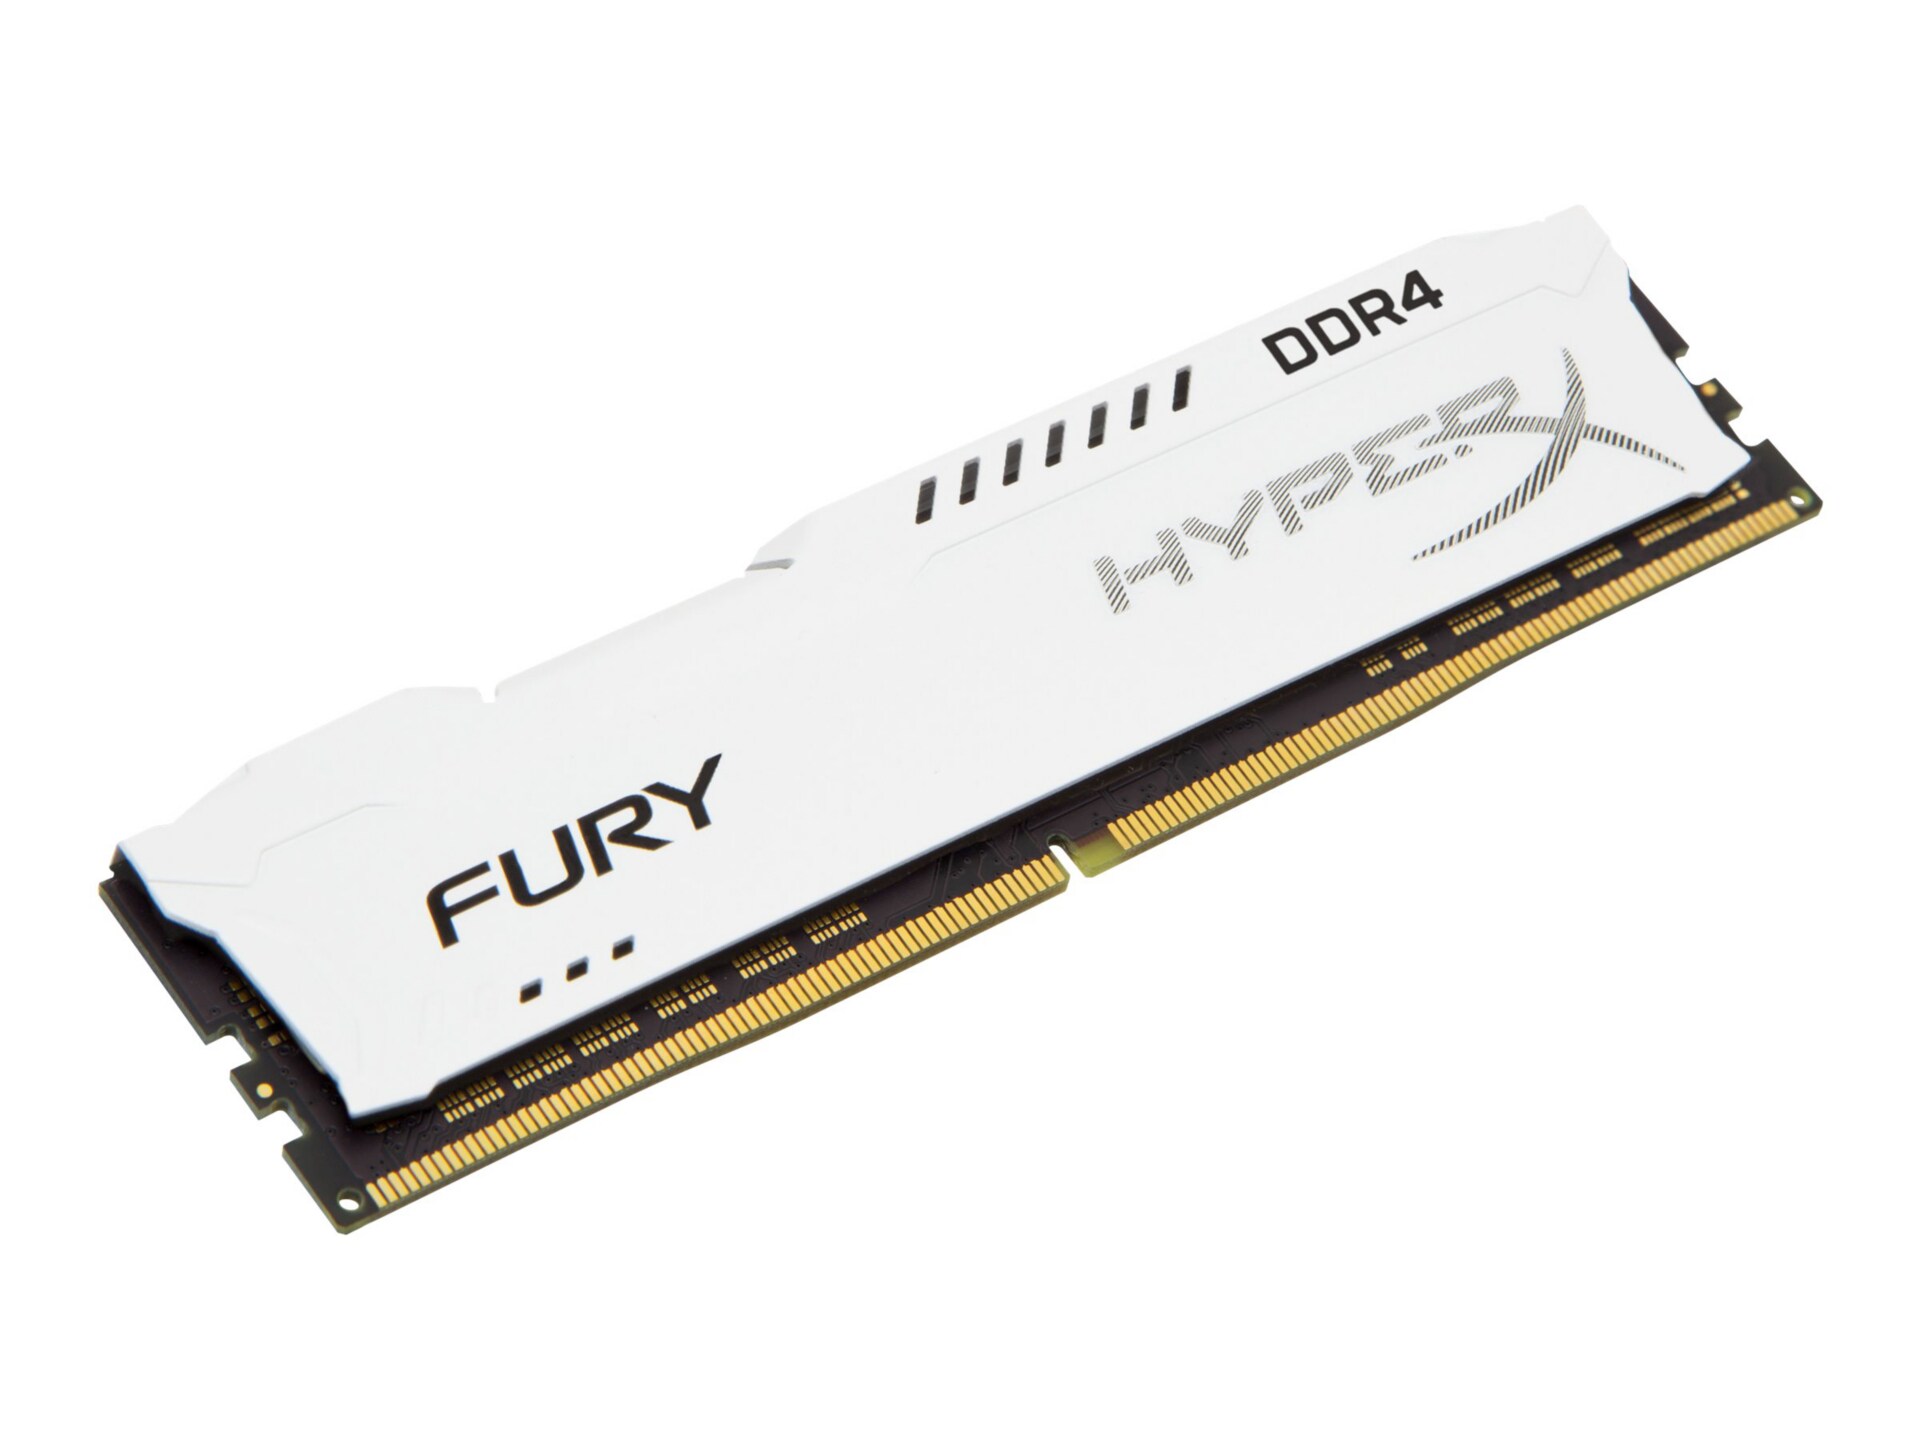 HyperX FURY - DDR4 - 16 GB - DIMM 288-pin